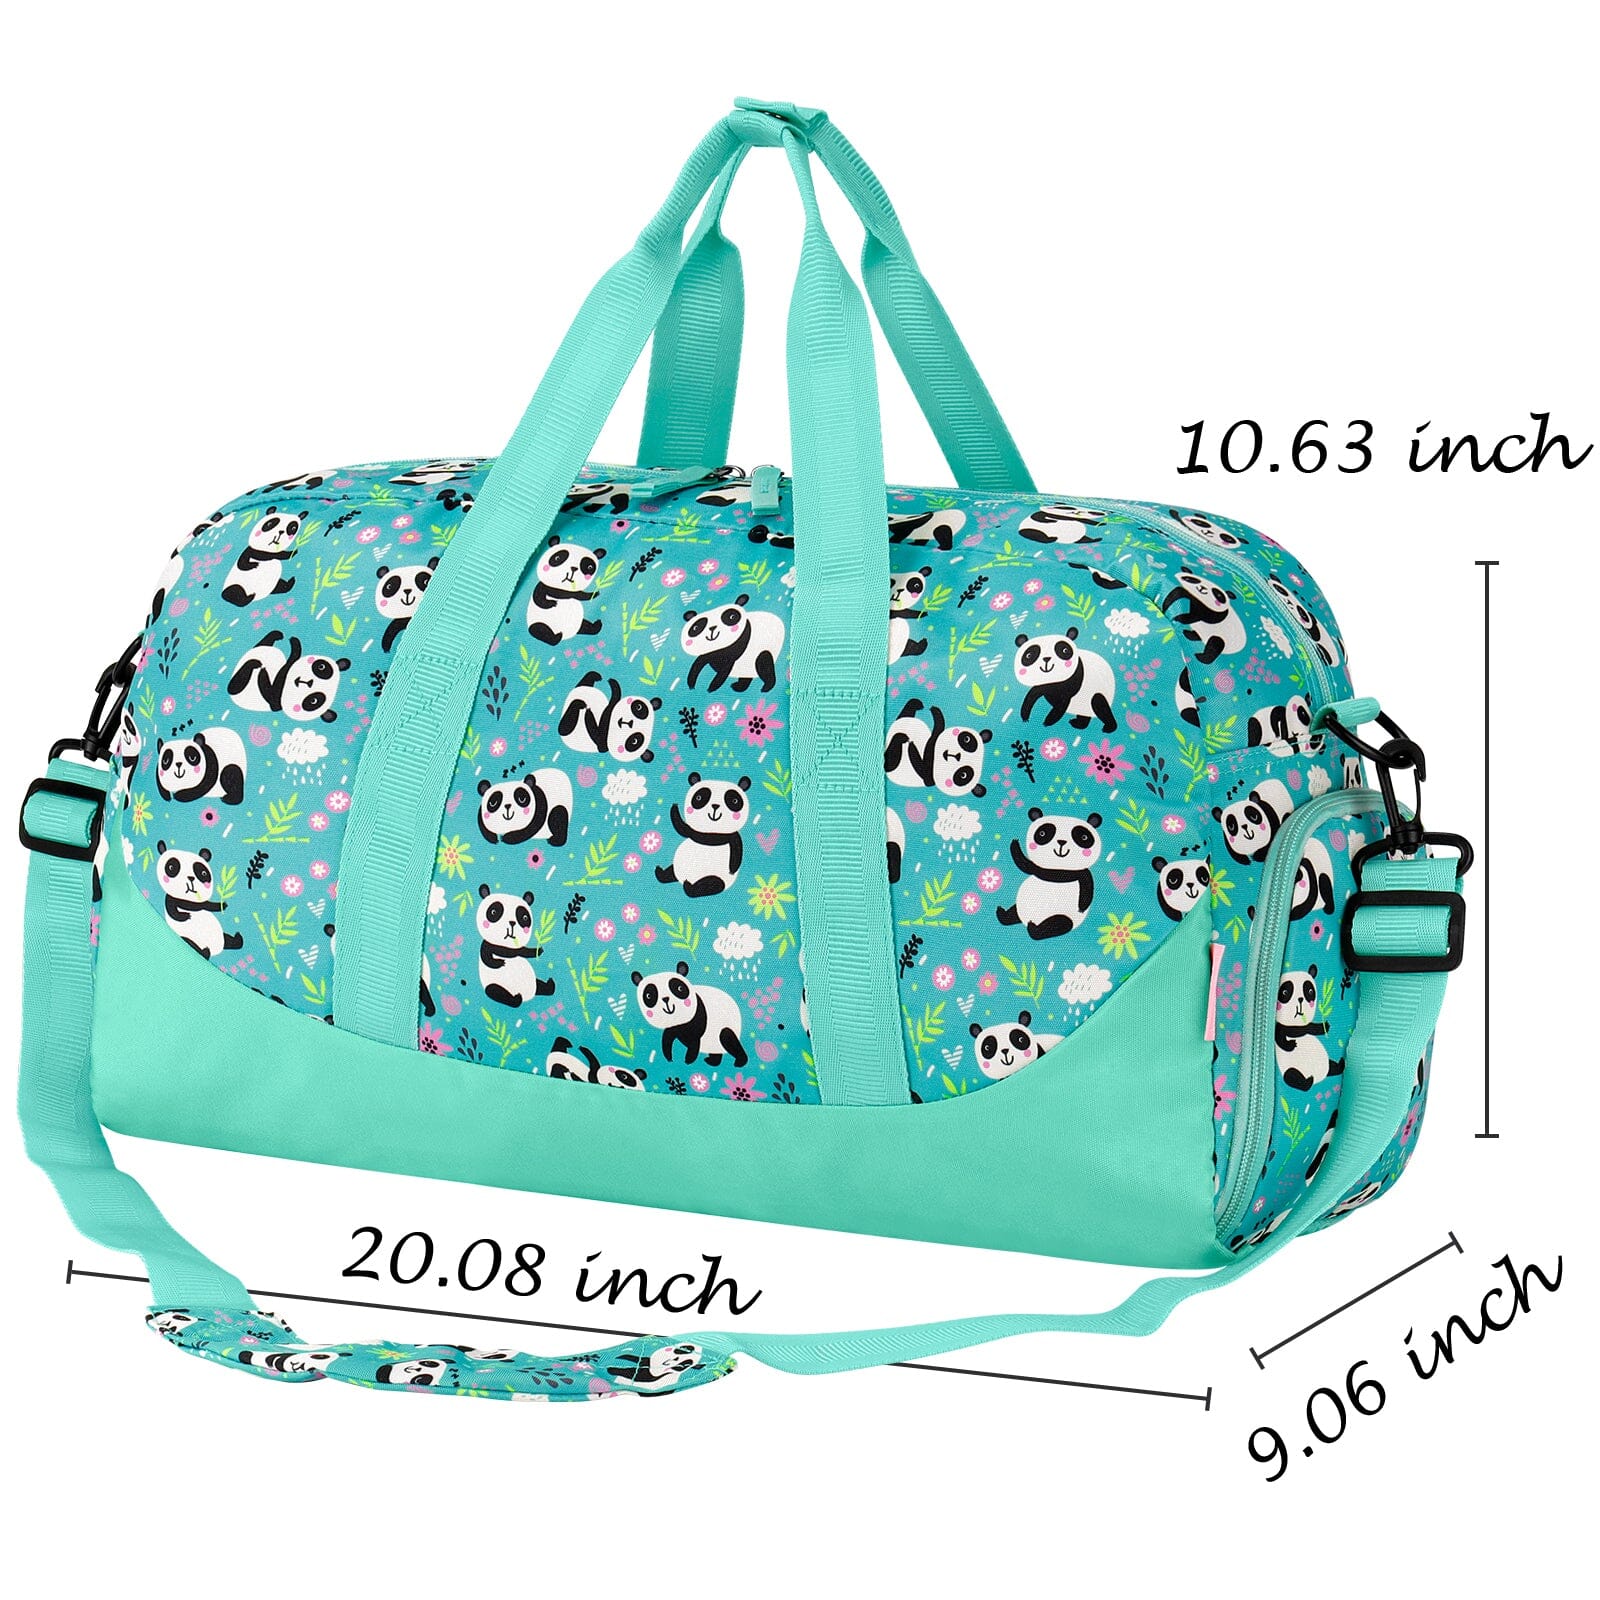 Choco Mocha Kids Green Duffle Bag for Girls, Kids Panda Travel Bag 20.08*9.06*10.63 Inches chocomochakids 